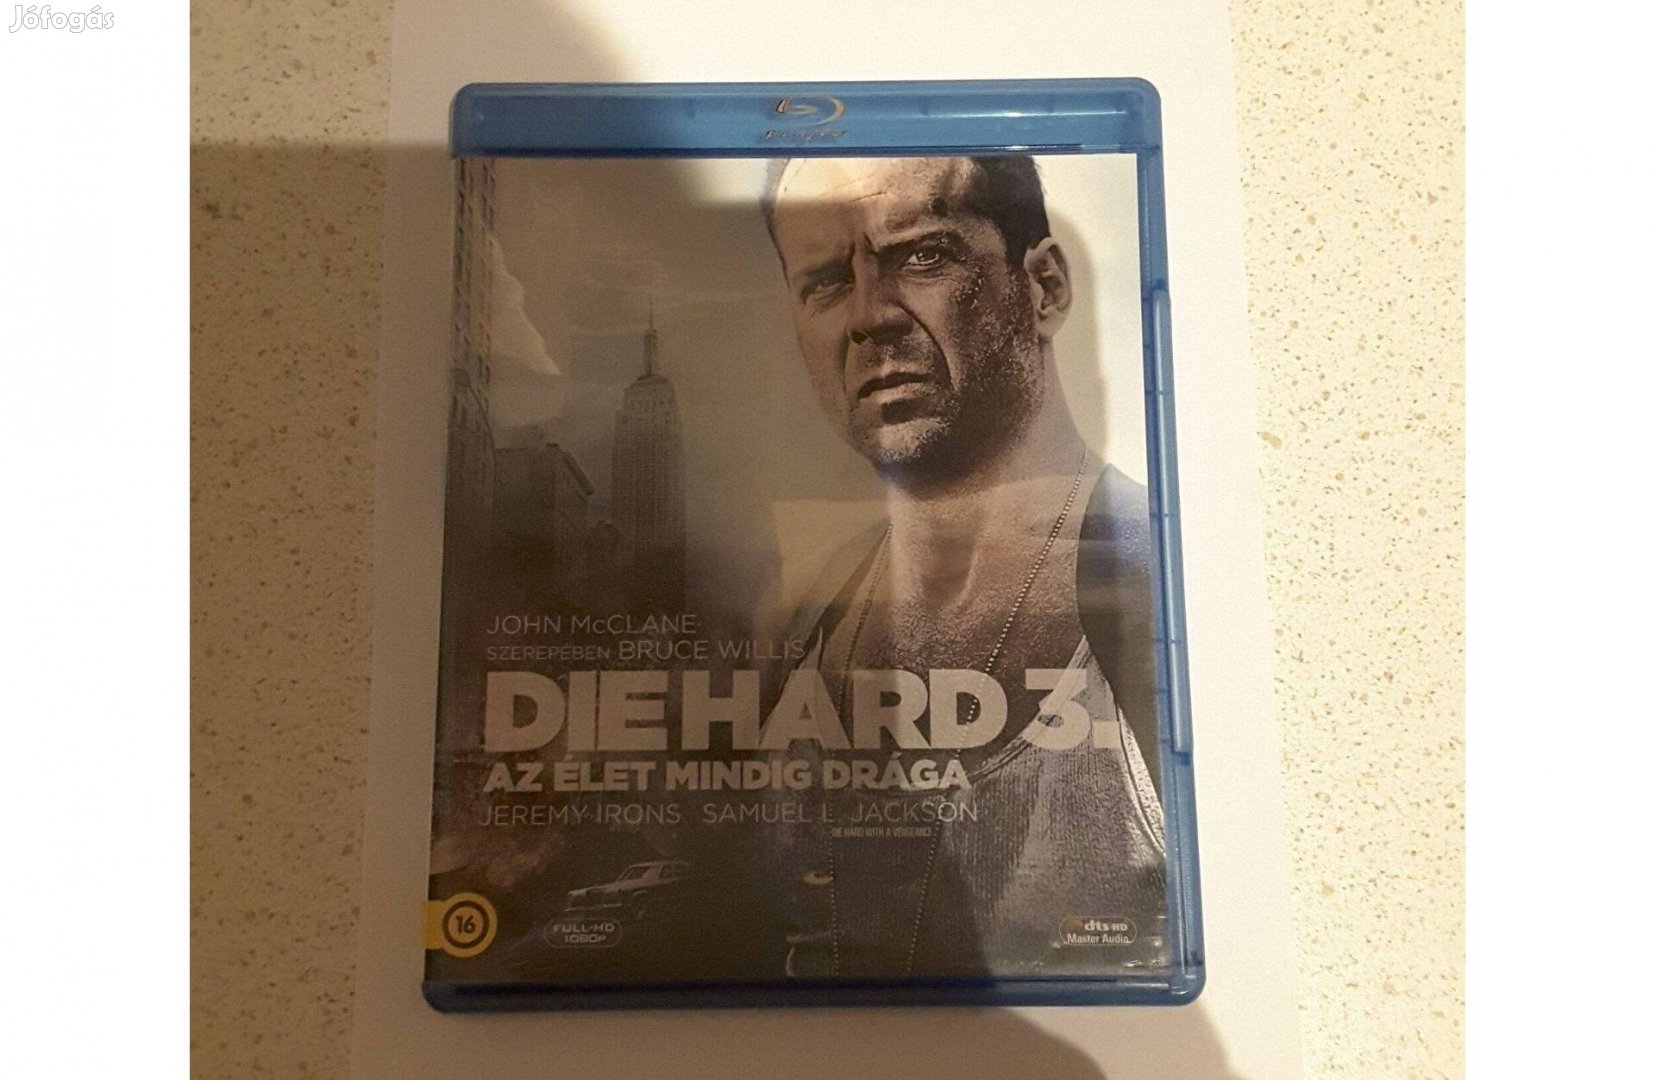 Die Hard 3. - Az élet mindig drága blu-ray Újszerű Magyar kiadás